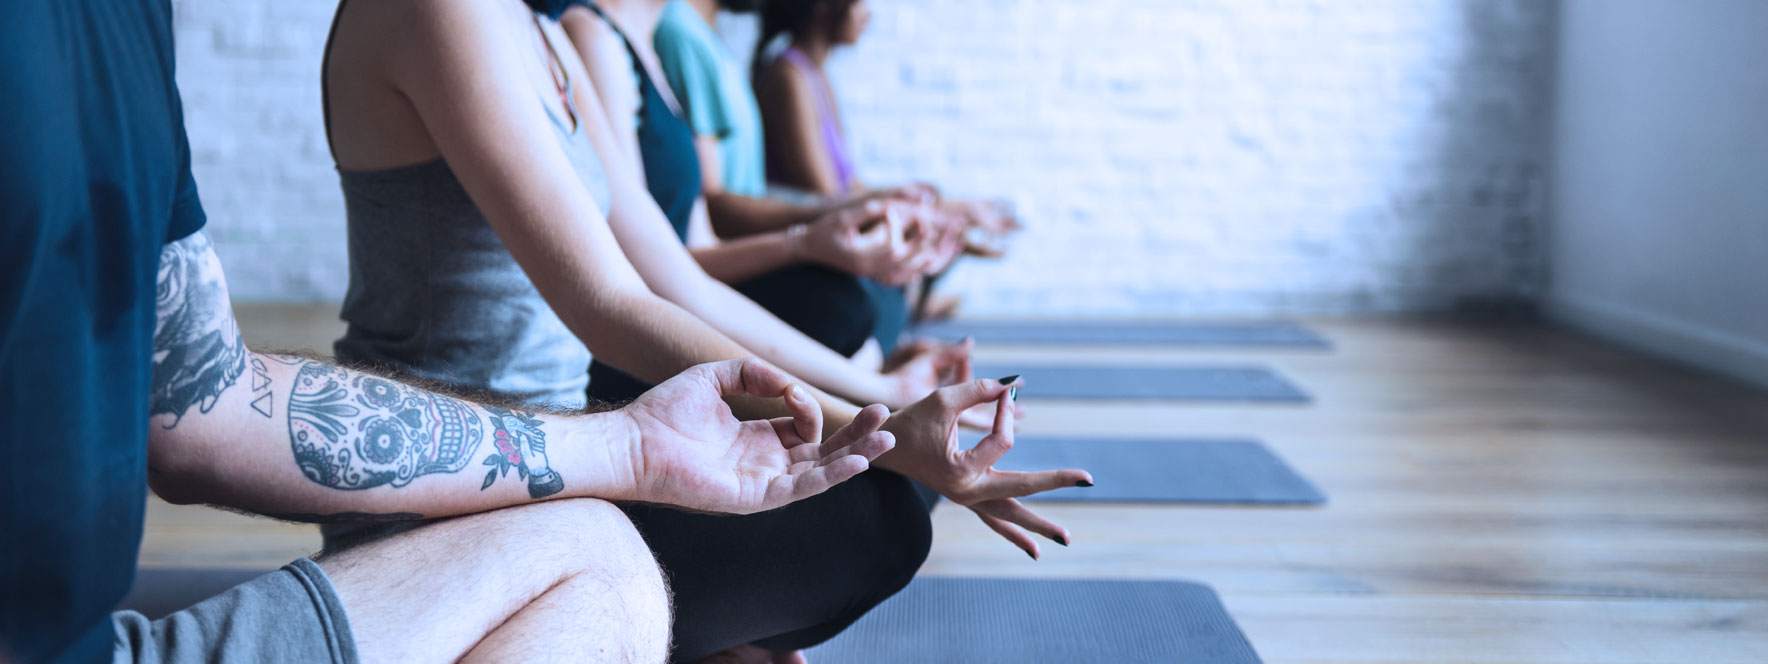 Respiration assise yoga - Blogue du Réseau